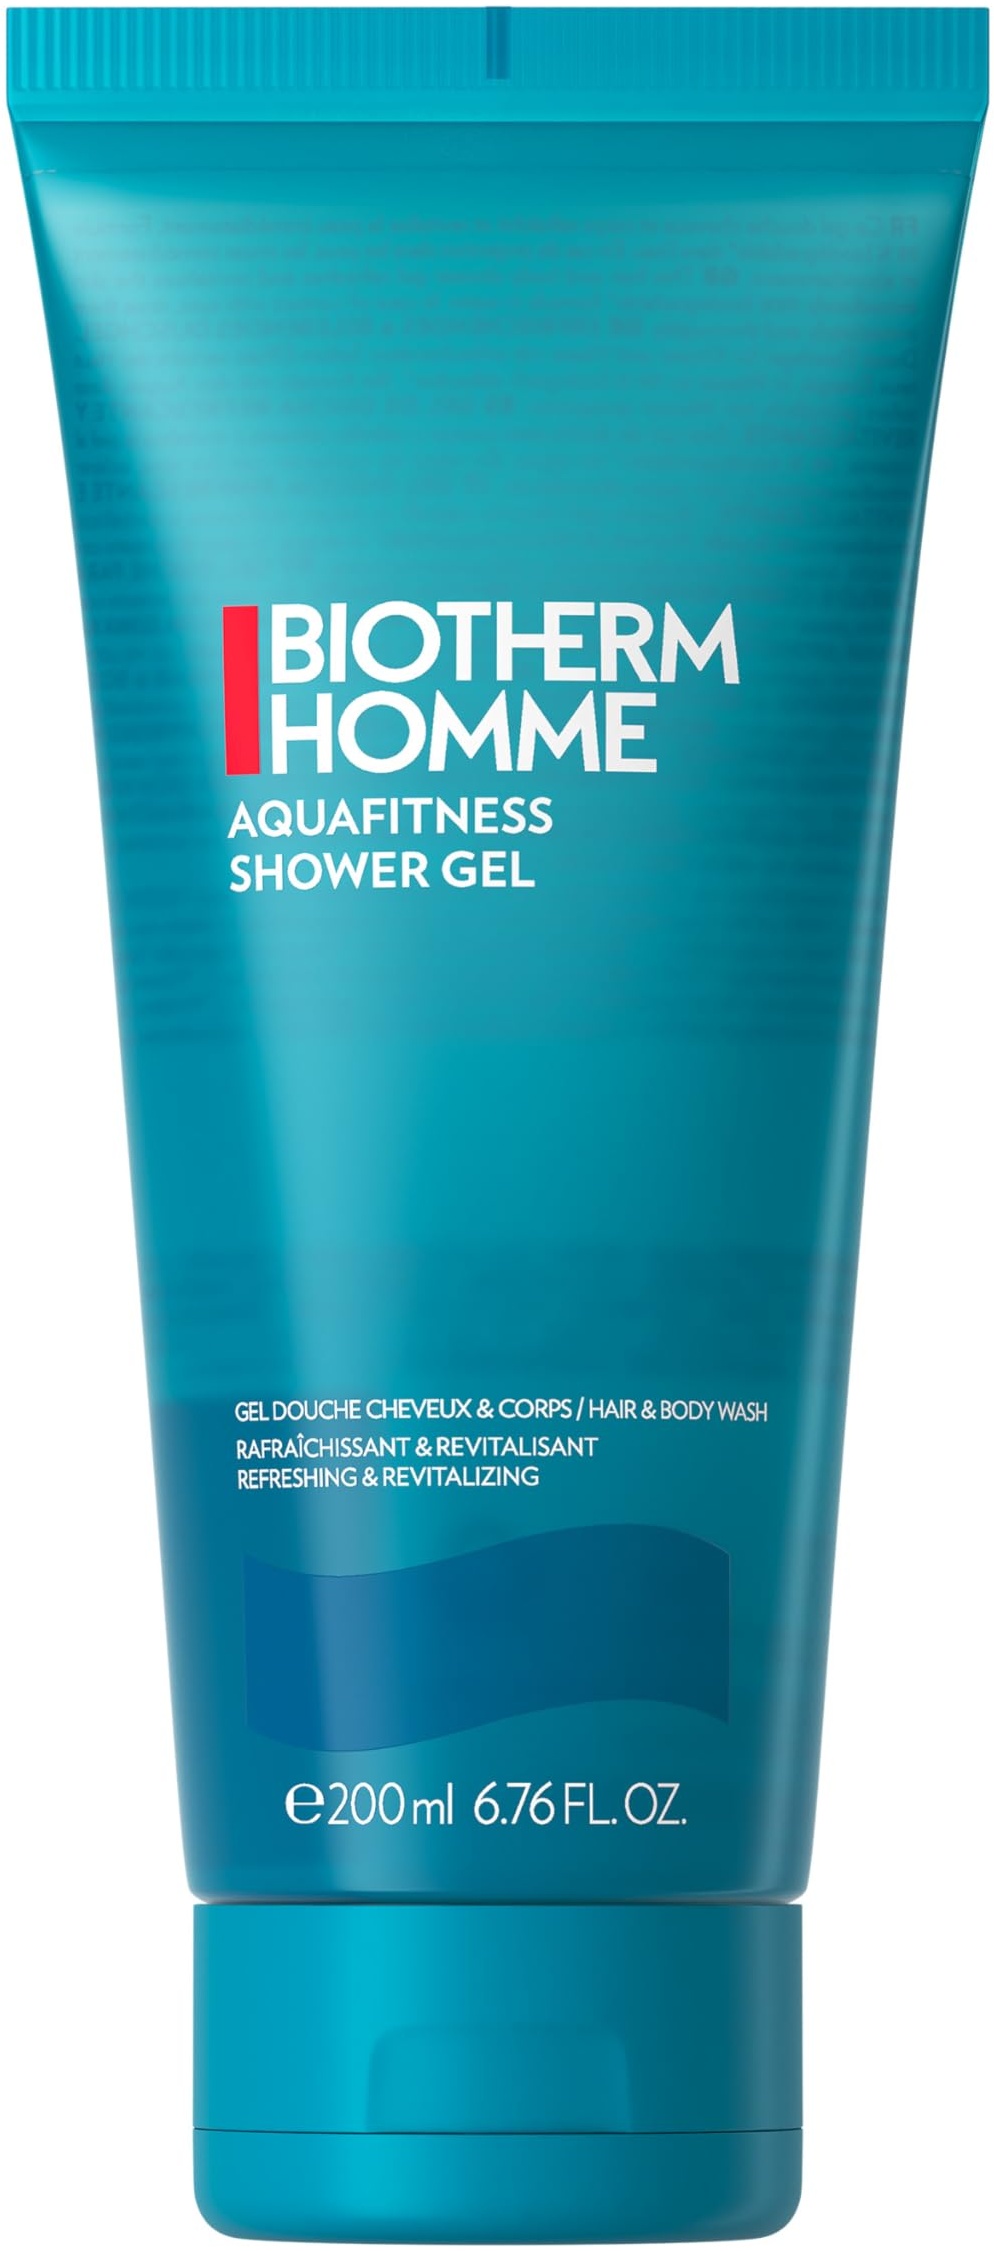 BIOTHERM Homme Aqua Fitness Shower Gel, belebendes Duschgel für Männer, mit Meeresduft, für ein erfrischtes Hautgefühl, Körper & Haare, 200 ml